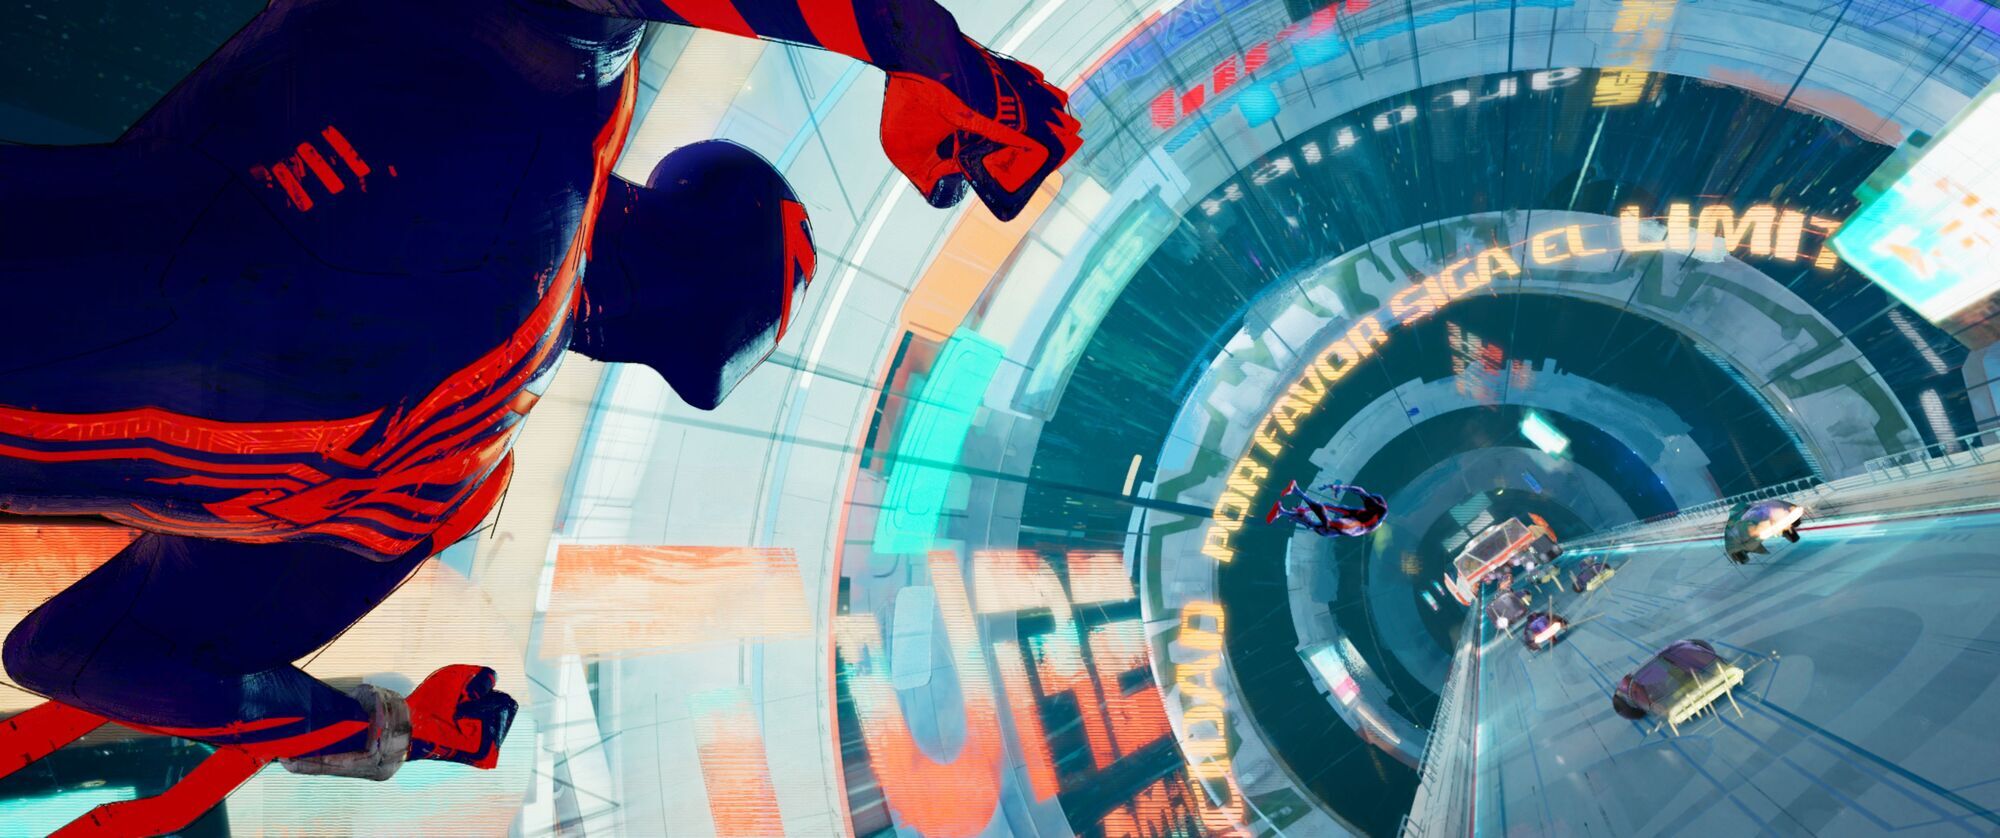 "Человек-паук: Сквозь Вселенную" всего за 12 дней превзошел кассовые сборы первой части анимации.